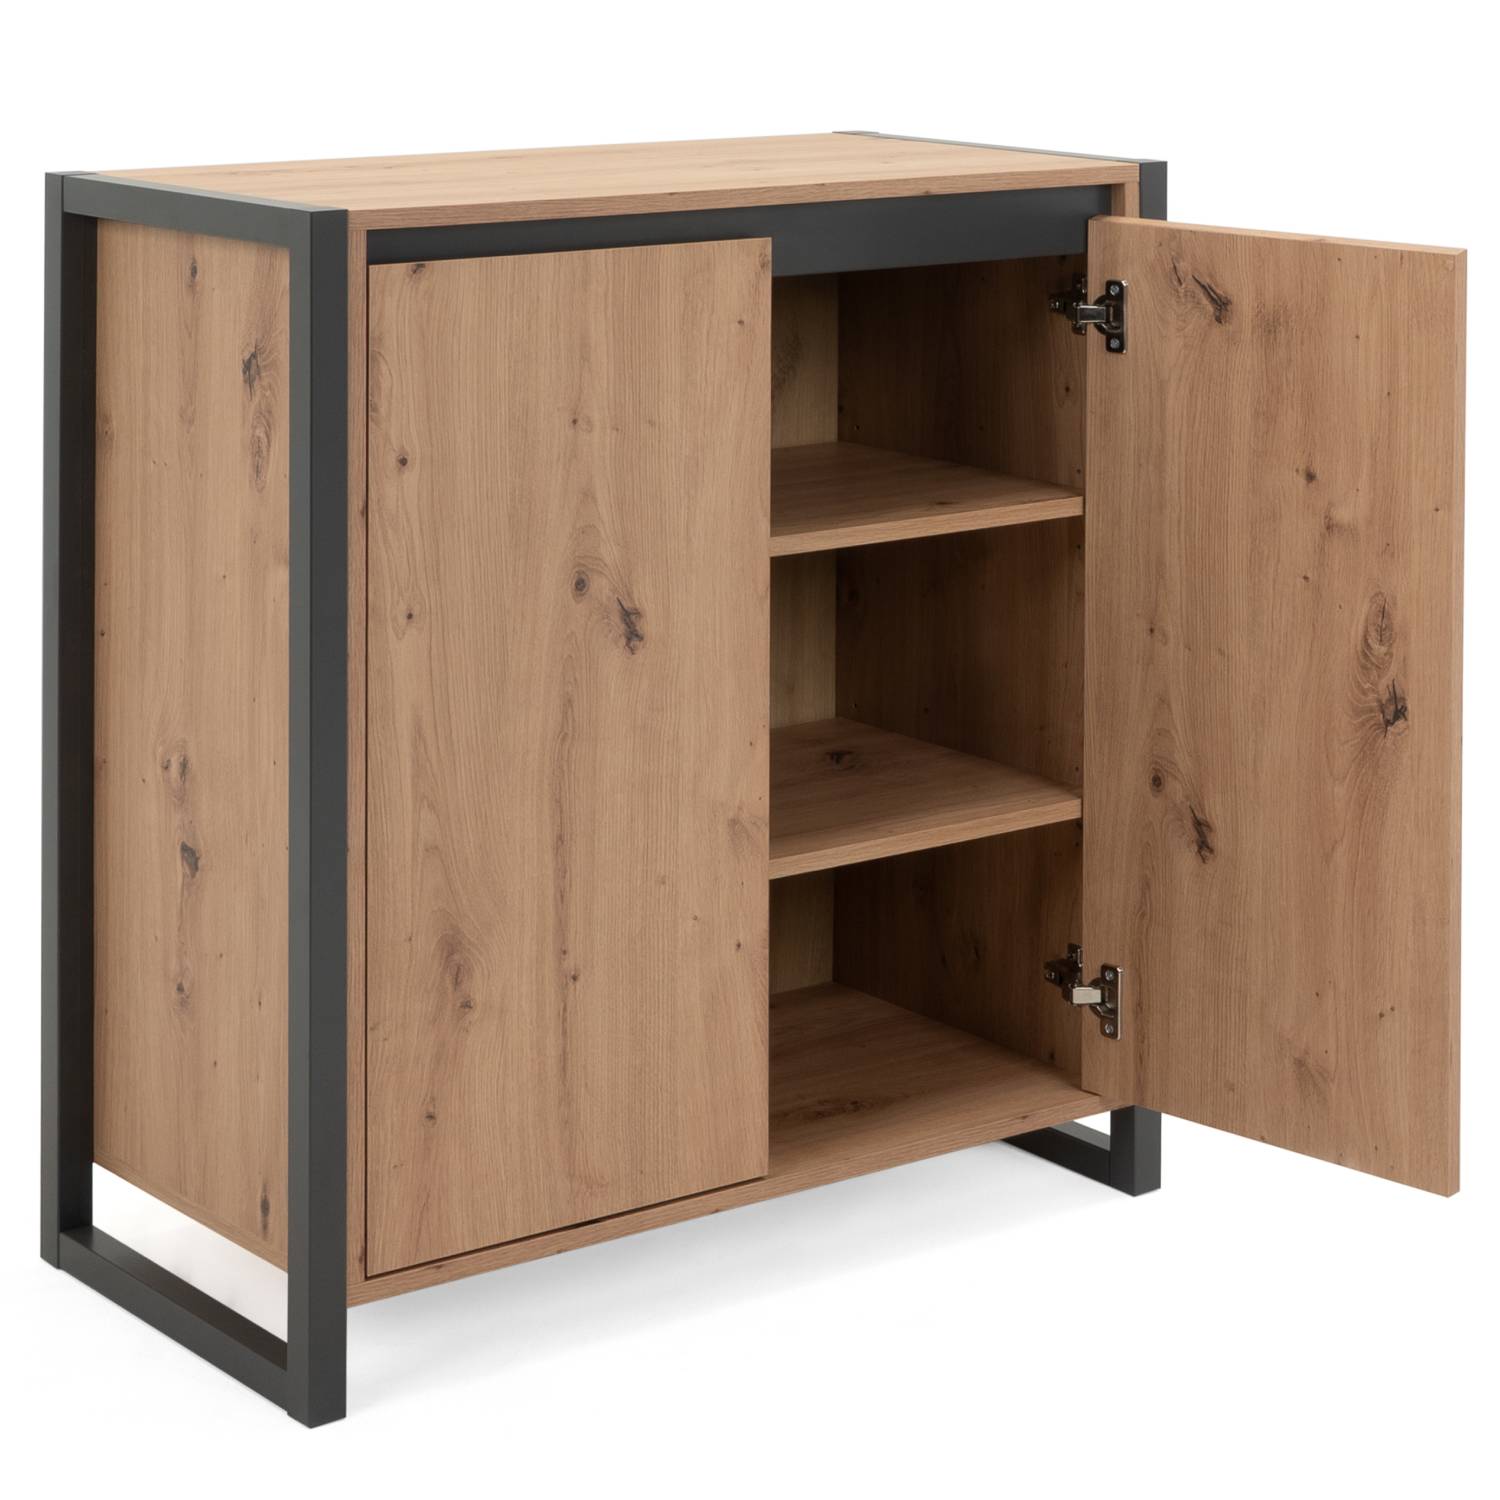 Sideboard Cupboard Storage Cabinet Wood Oak Living Room Industrial Look